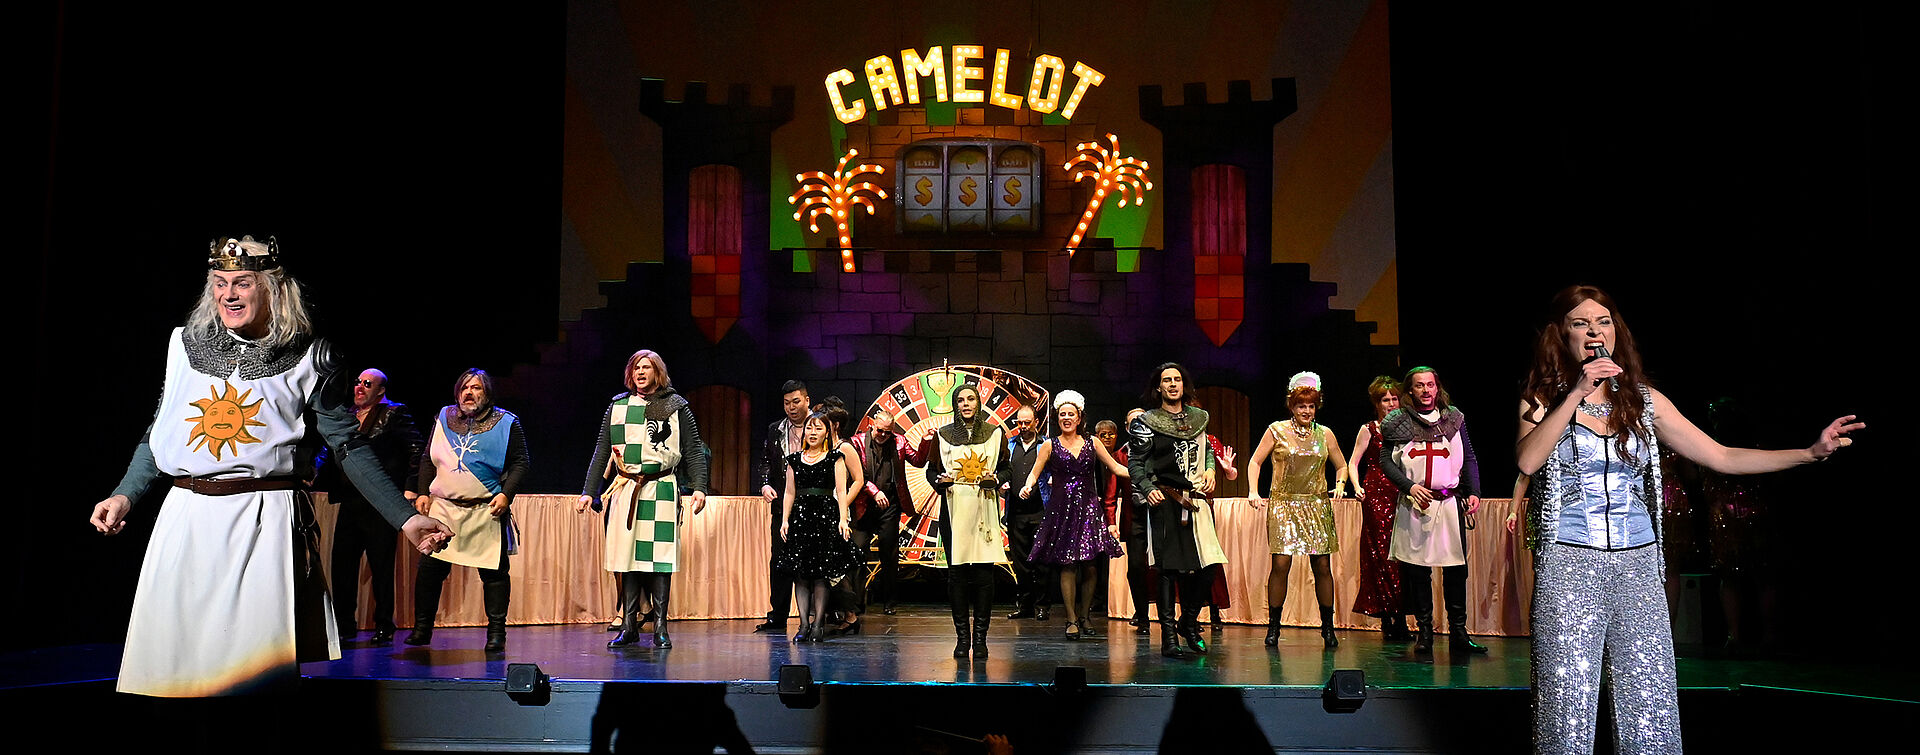 Am vorderen Bühnenrand stehen König Artus und eine singende Frau in glitzerndem Kostüm. Im Hintergrund tanzt eine Gesellschaft vor der Burg Camelot, deren Name in leuchtenden Lettern erstrahlt.